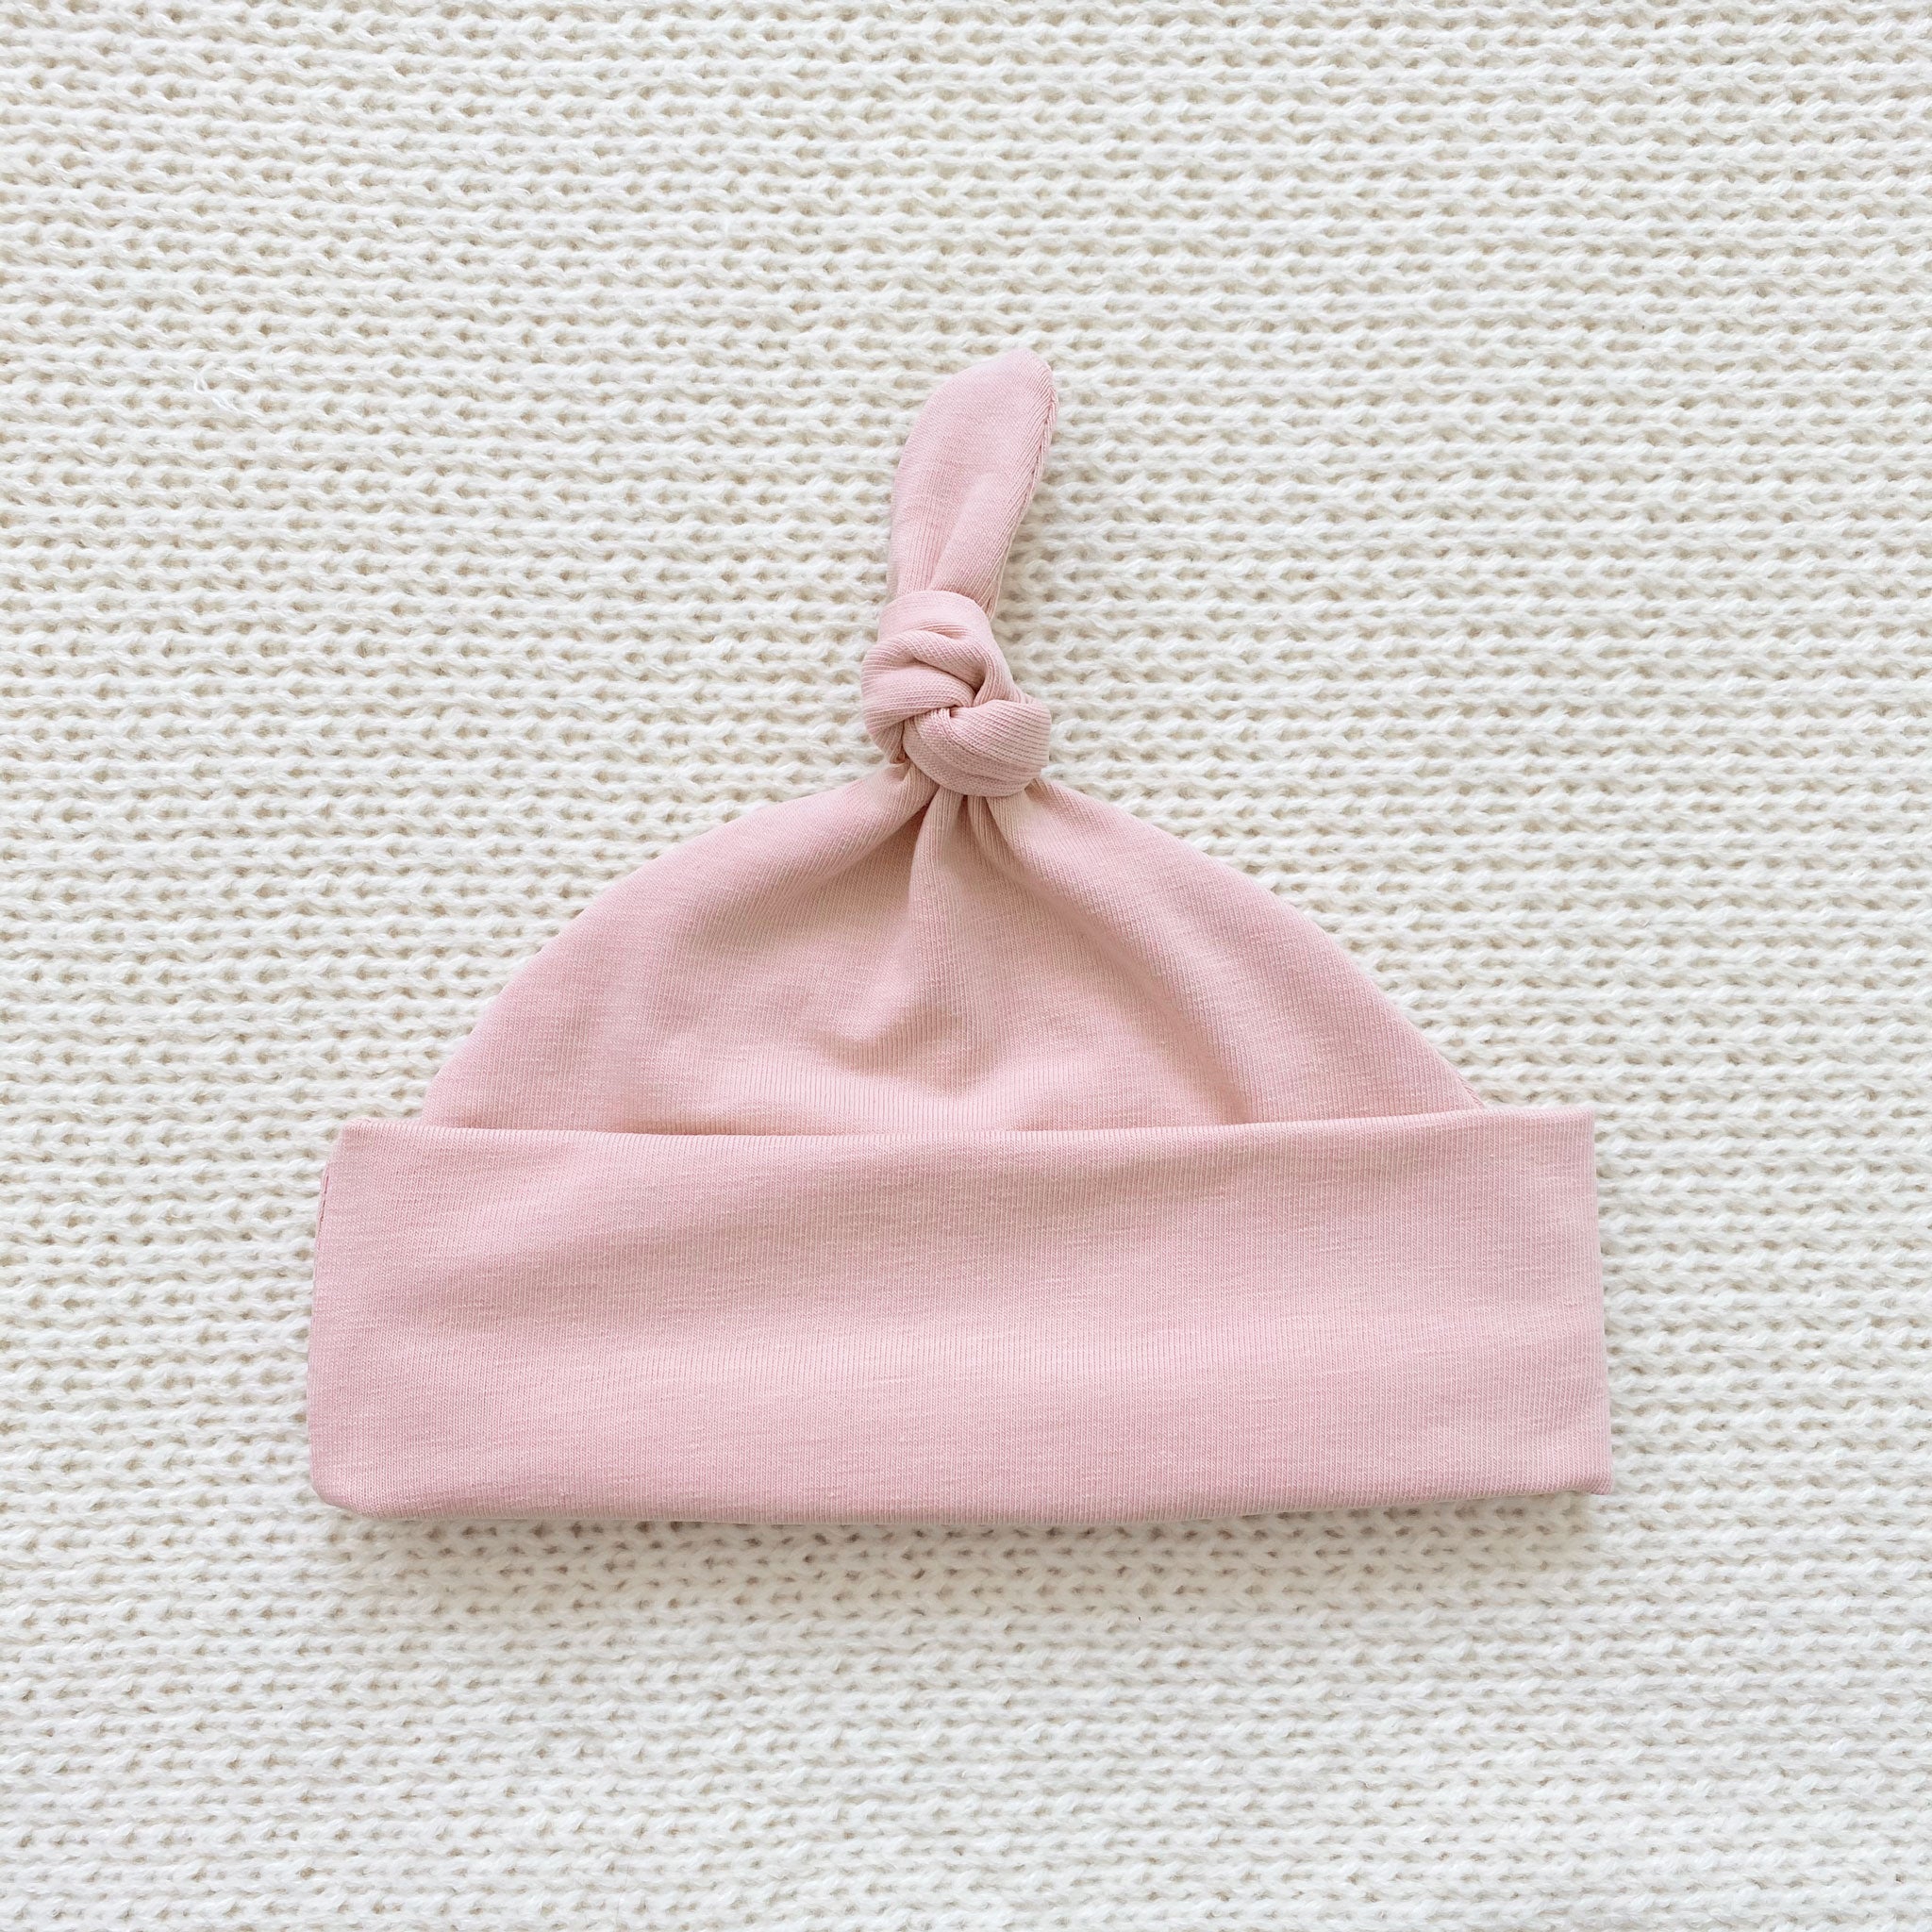 Dusky pink knot hat